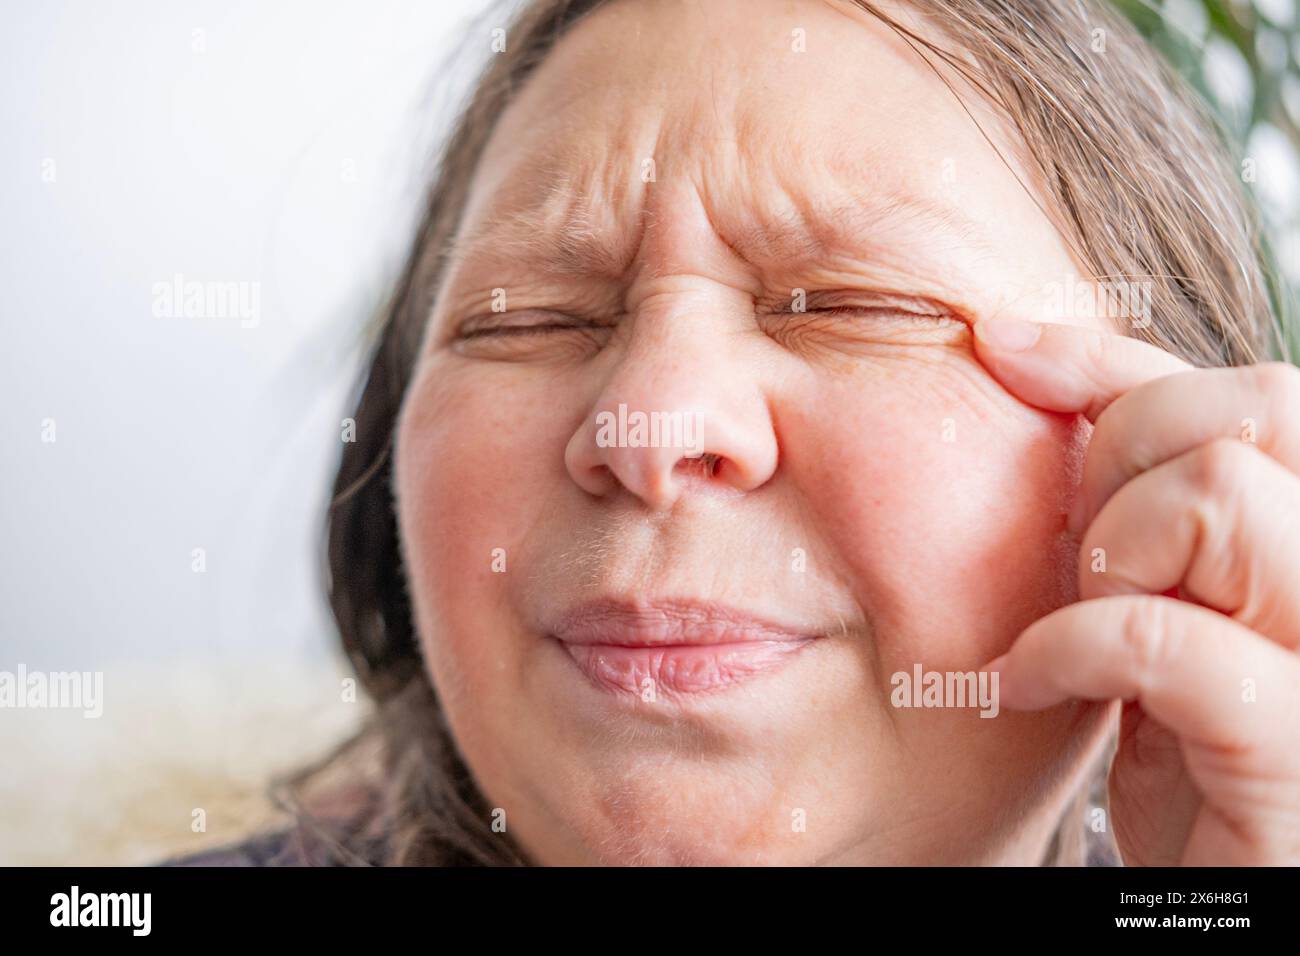 kaukasische reife Frau mit schmerzhaftem Auge, Staubpickel in das Auge der Frau, verursacht Unannehmlichkeiten und Irritationen, Augengesundheit, Sehstörungen Stockfoto